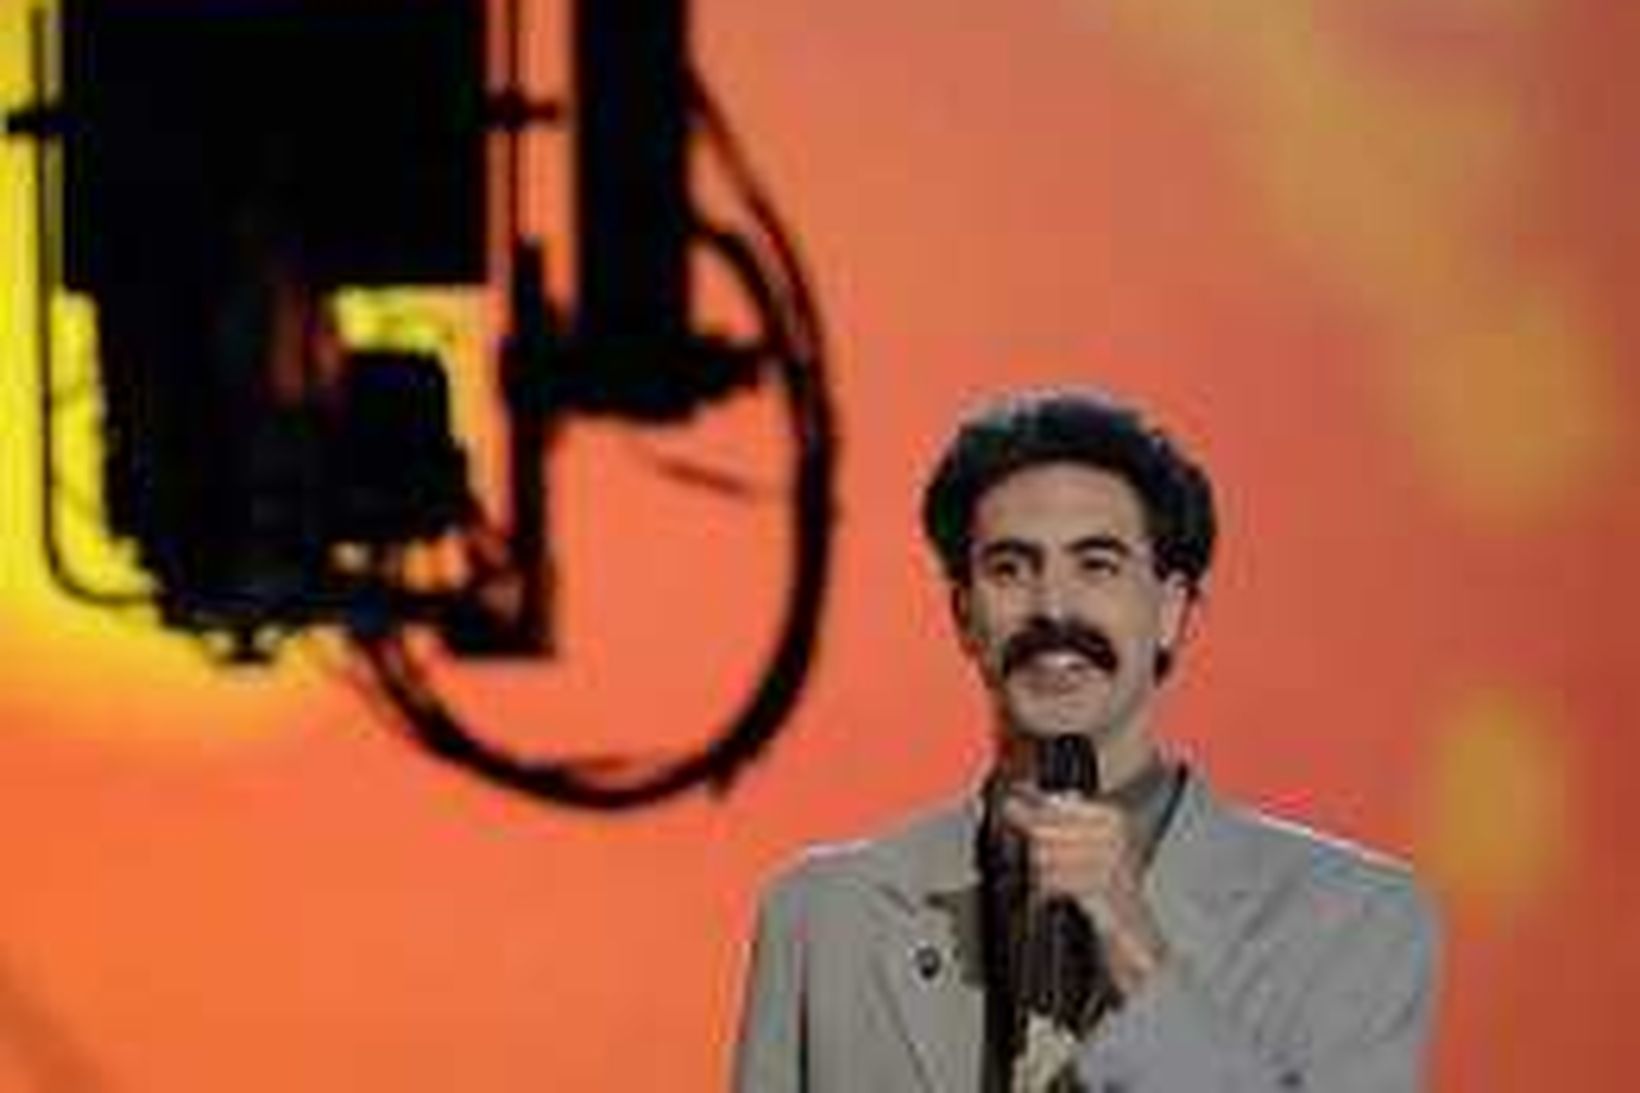 Fígúran Borat hefur komið við kaunin hjá mörgum.